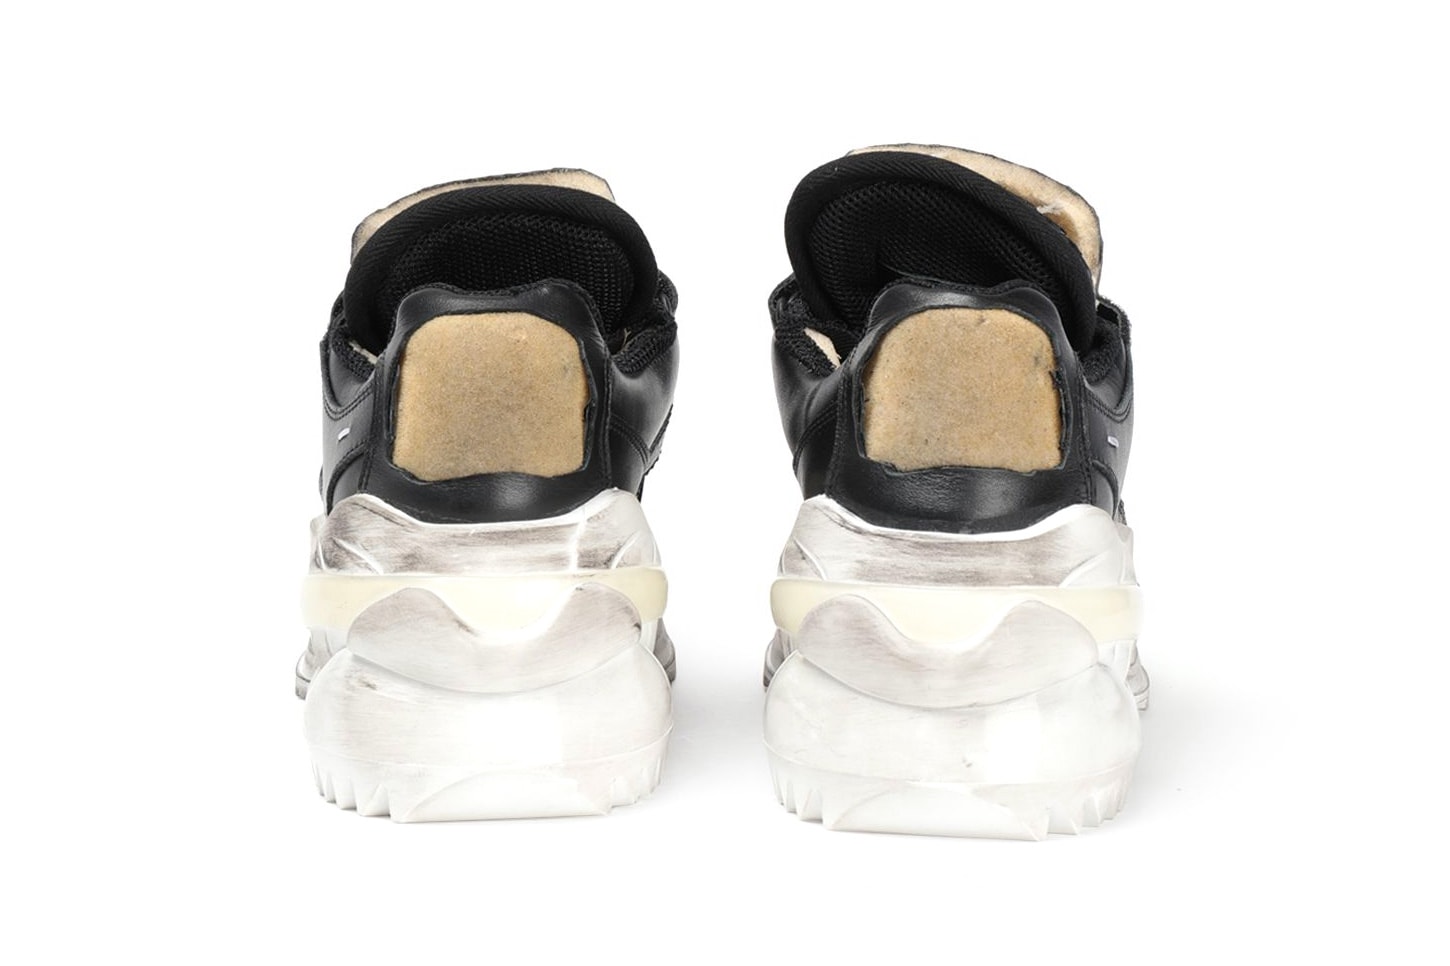 Maison Margiela Retro Fit Low Sneaker Release america silver white black colorways price date info purchase buy online chunky sneaker dad shoe trend menswear streetwear